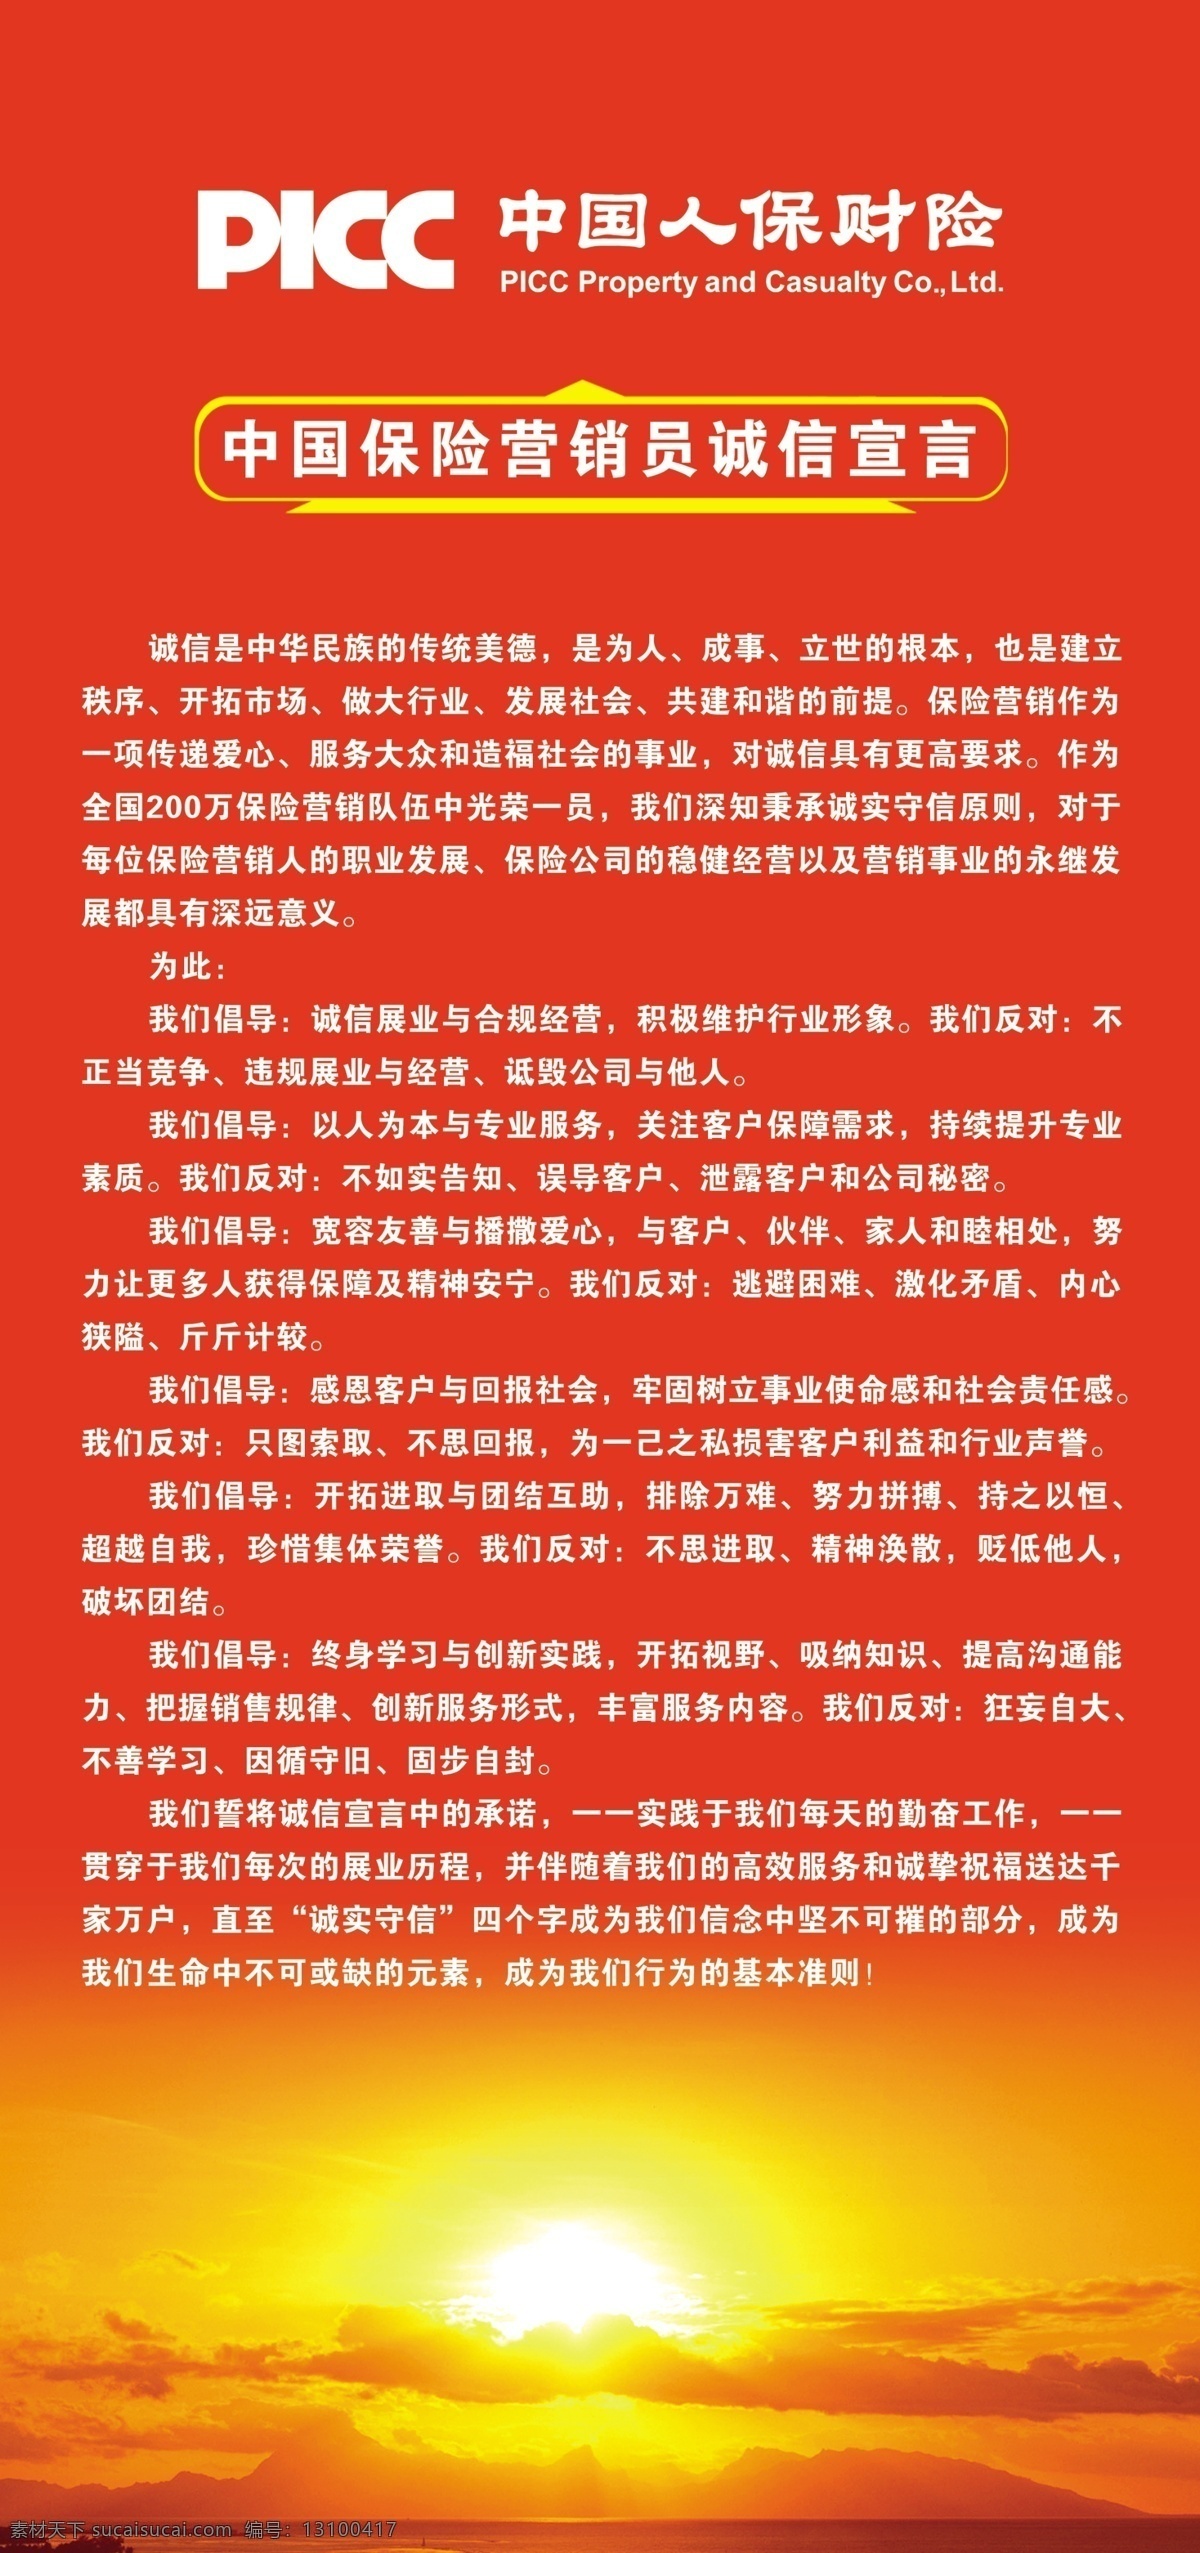 picc 中国 人保 广告设计模板 其他模版 源文件库 保险 营销员 诚信 宣言 模板下载 海报 企业文化海报